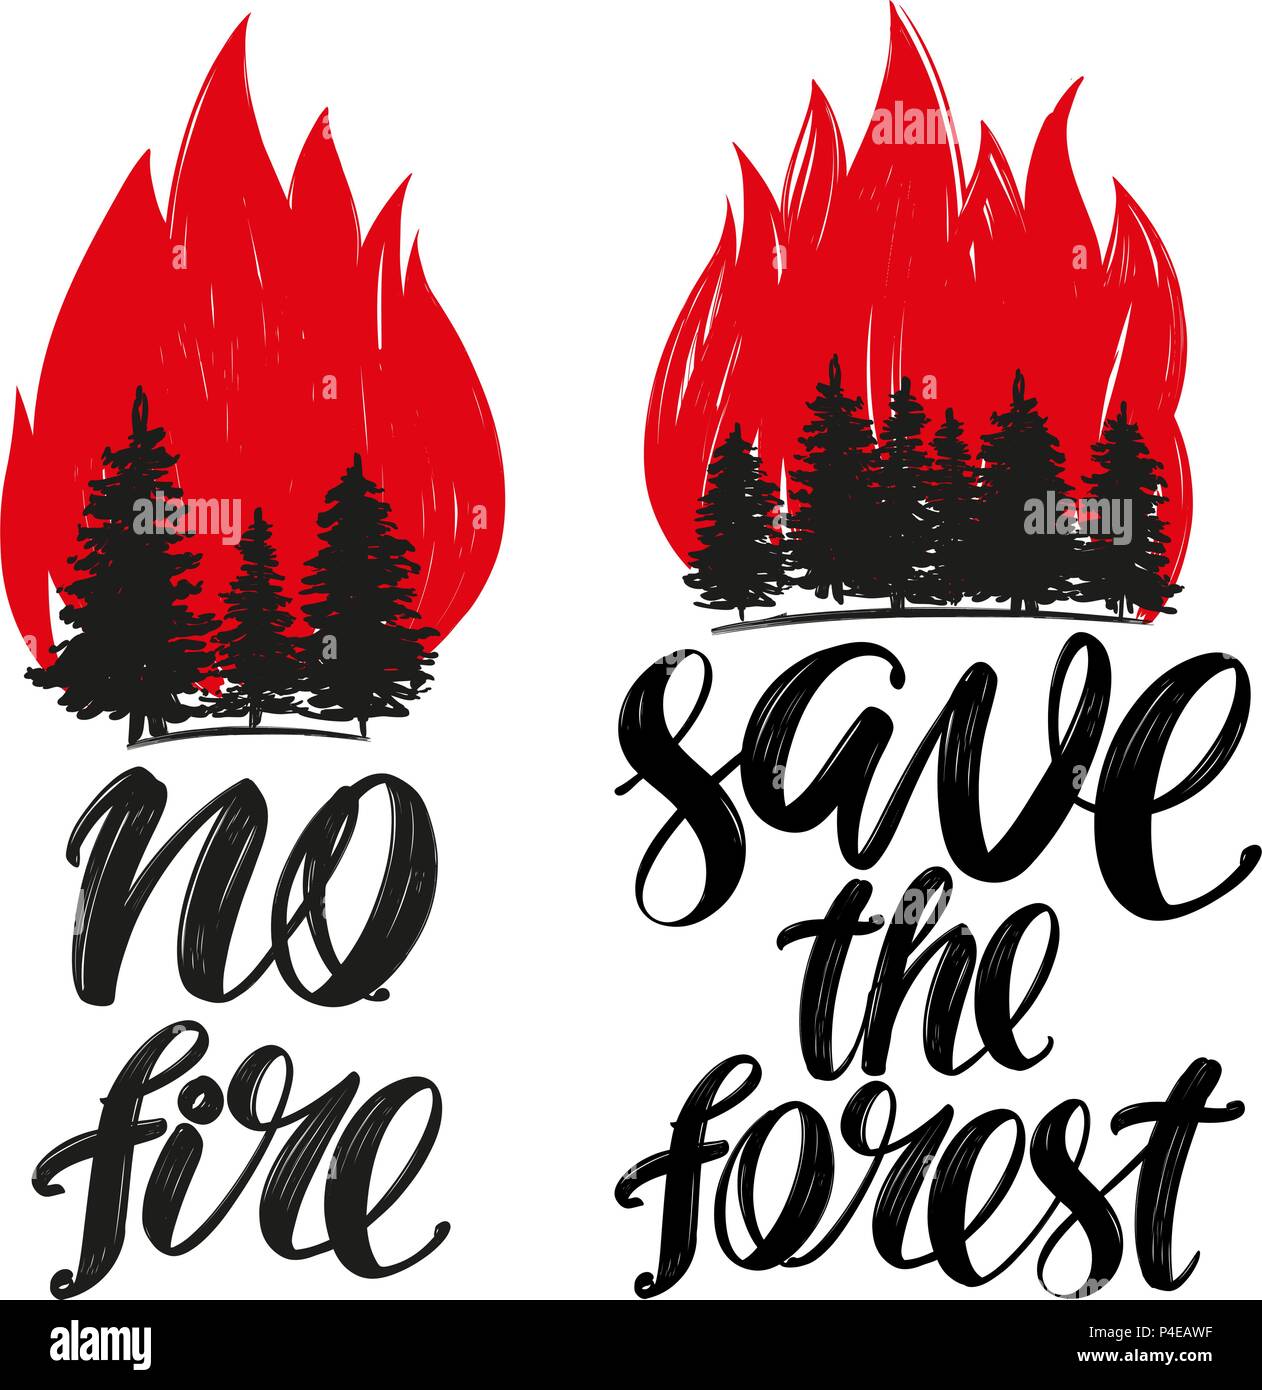 Den Wald retten, keine Fire Emblem, kalligraphische Texte, Hand gezeichnet Vektor-illustration realistische Skizze Stock Vektor